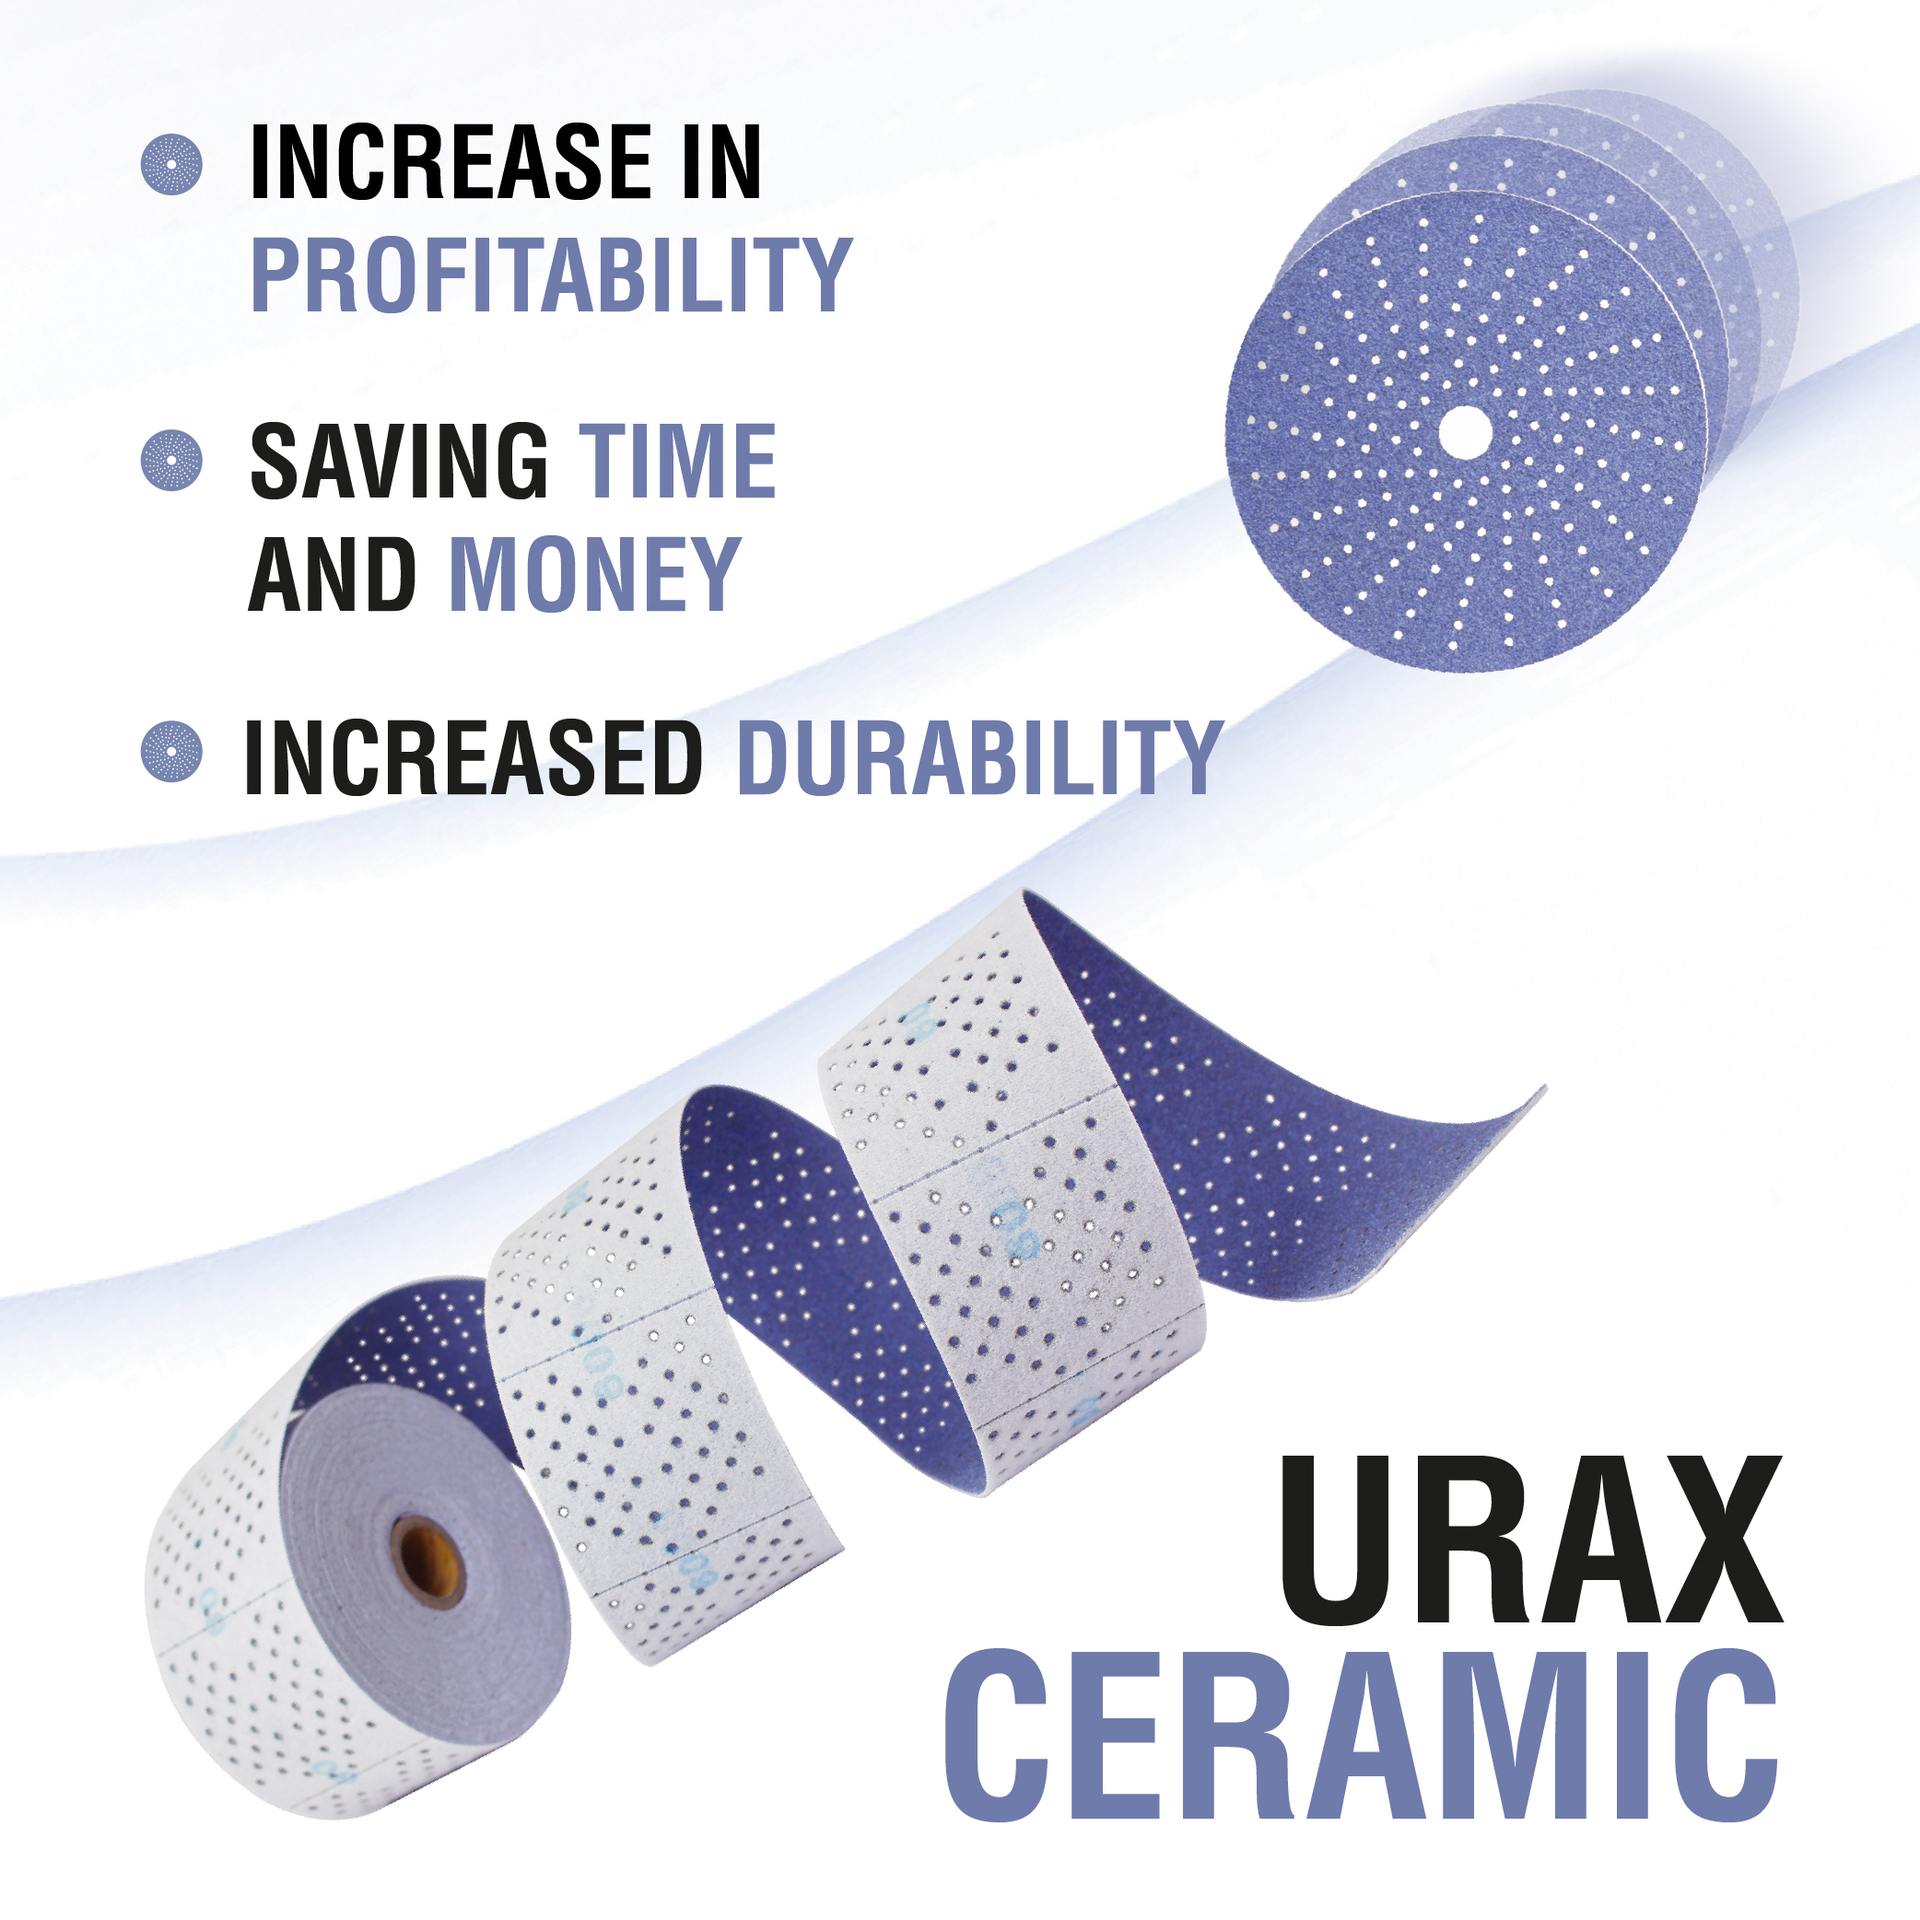 Urax ceramic